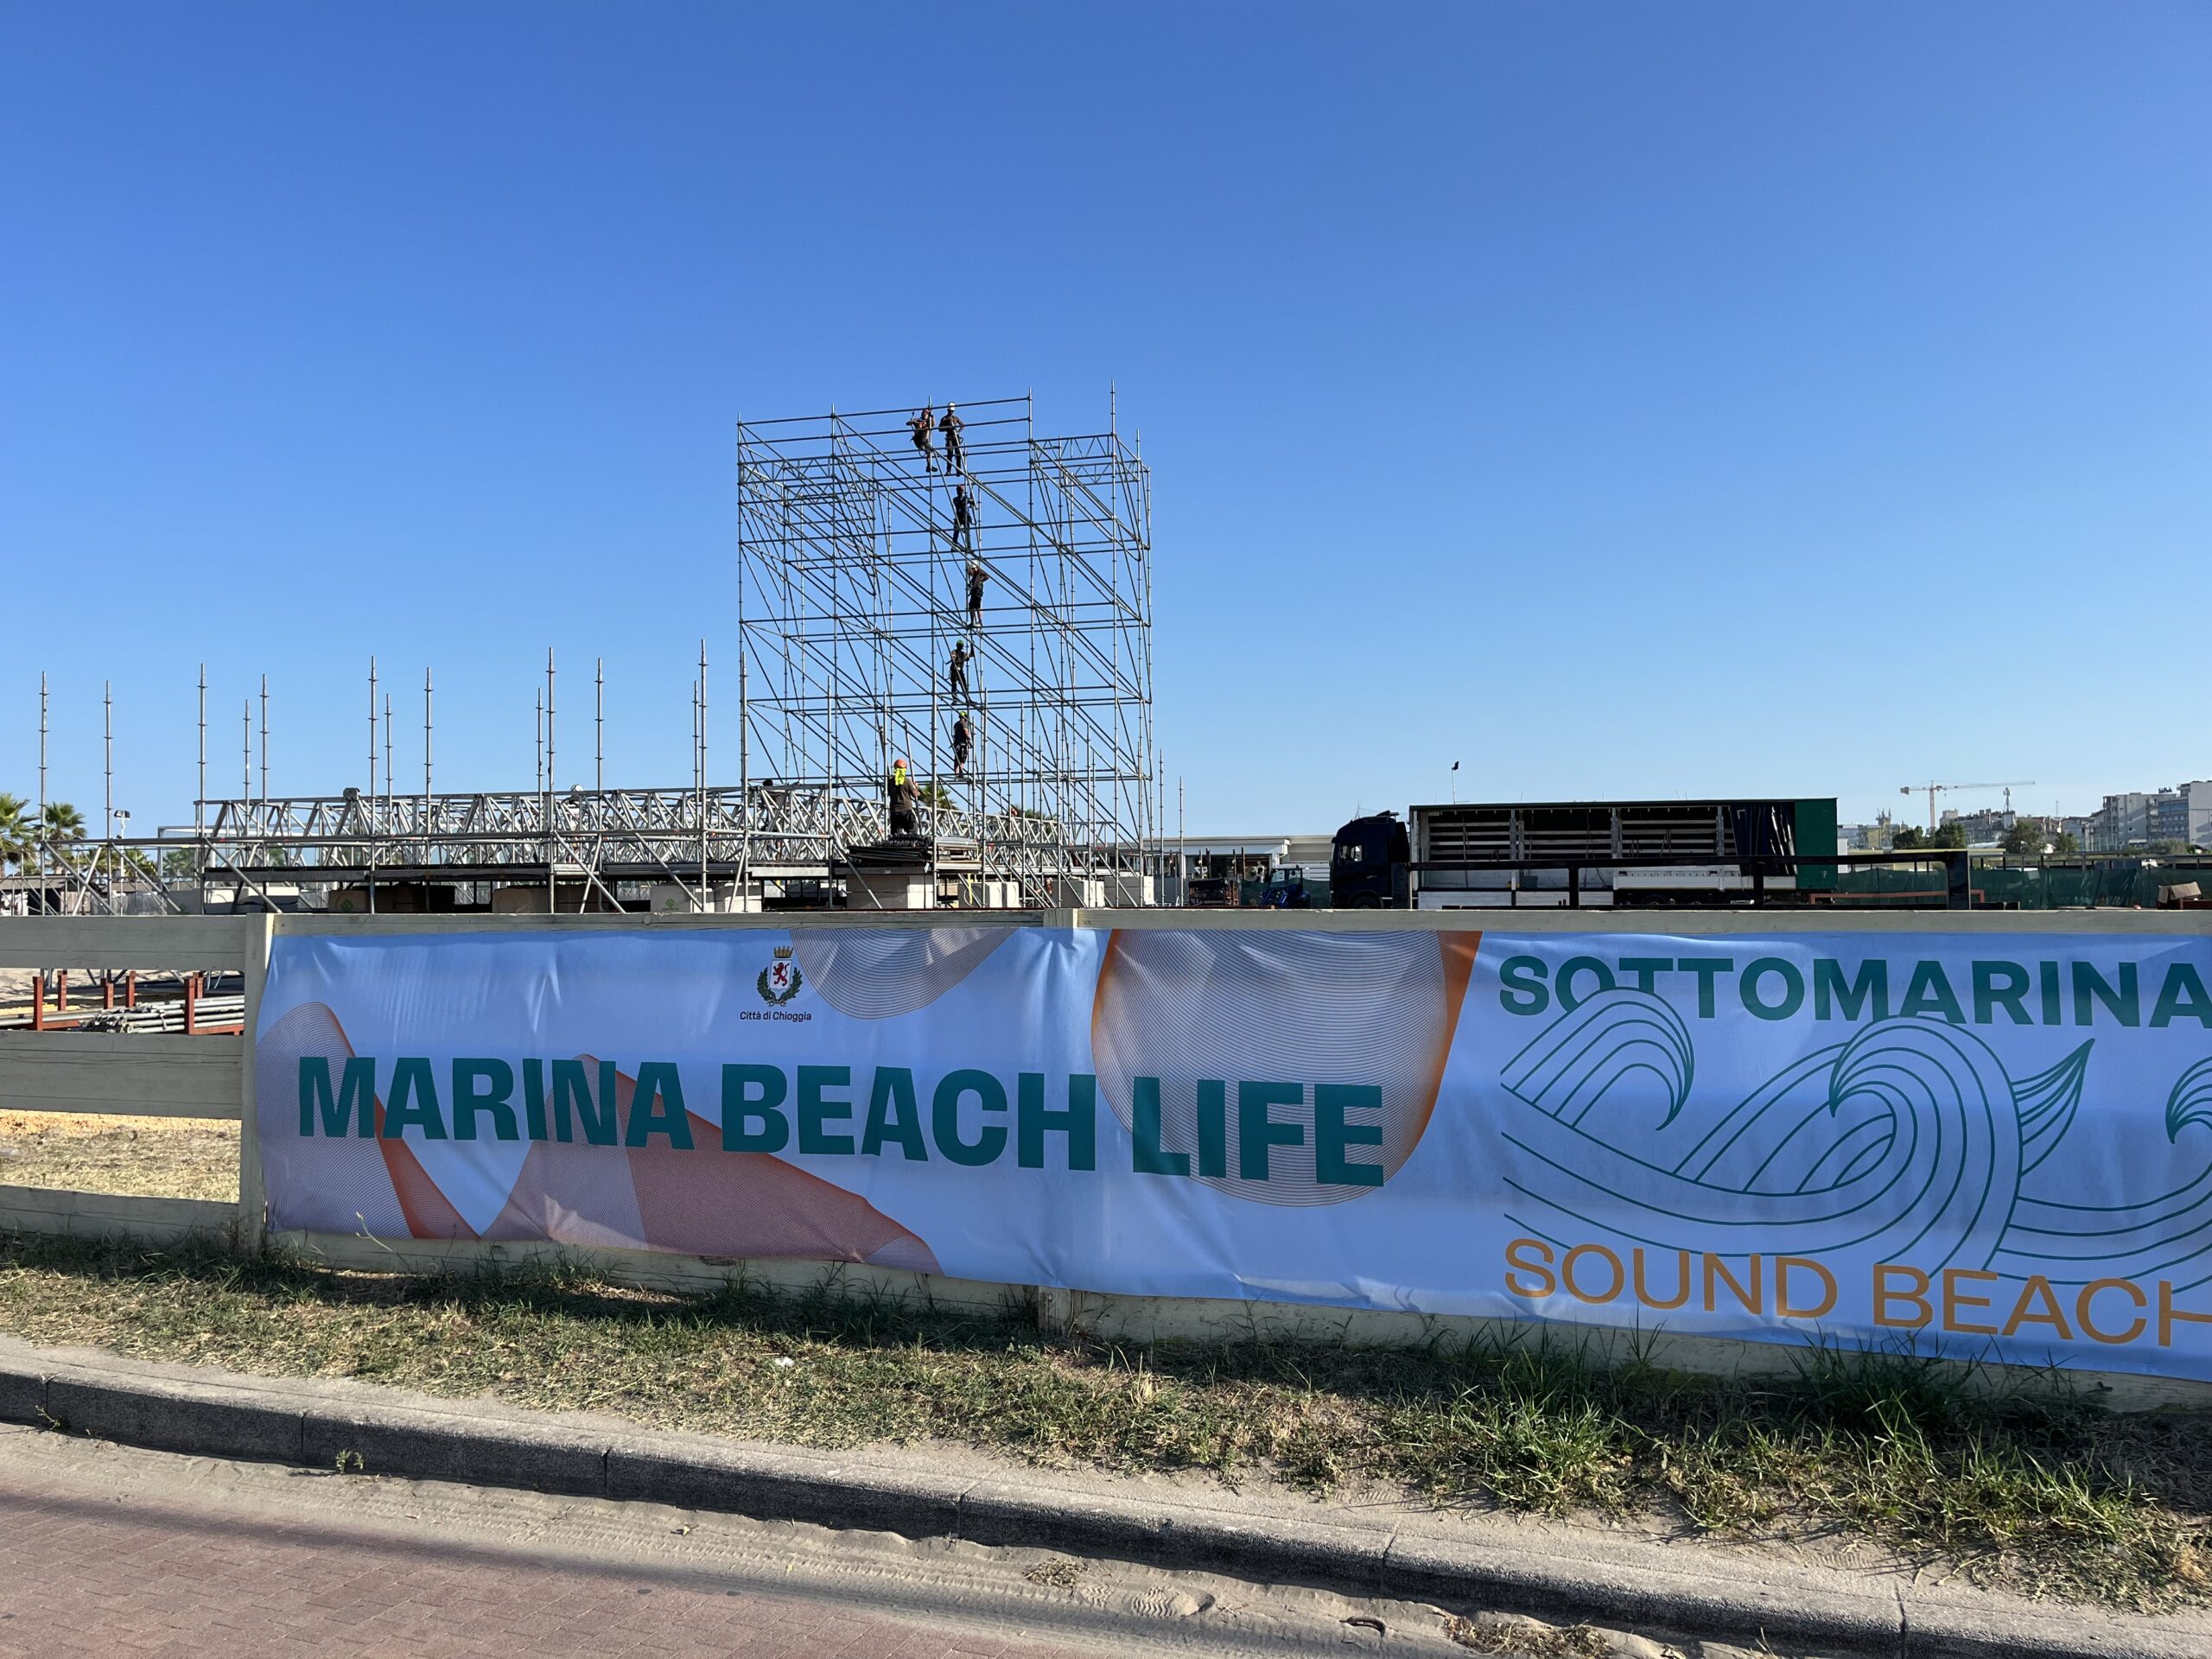 Sottomarina Sound Beach: Al via la costruzione del mega palco che ospiterà i concerti di Mahmood, Alfa ed Emma